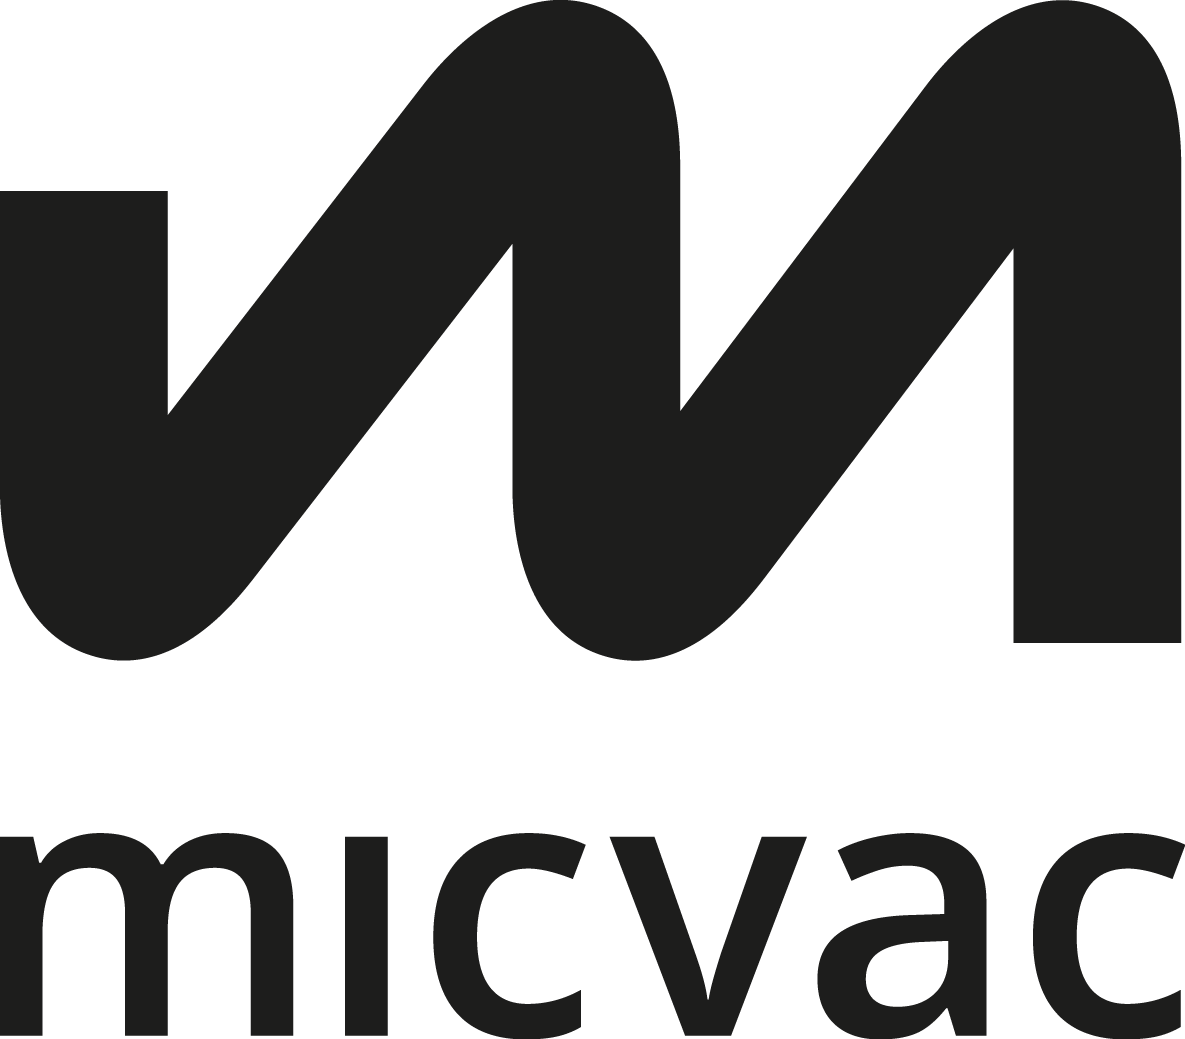 Micvac logo black